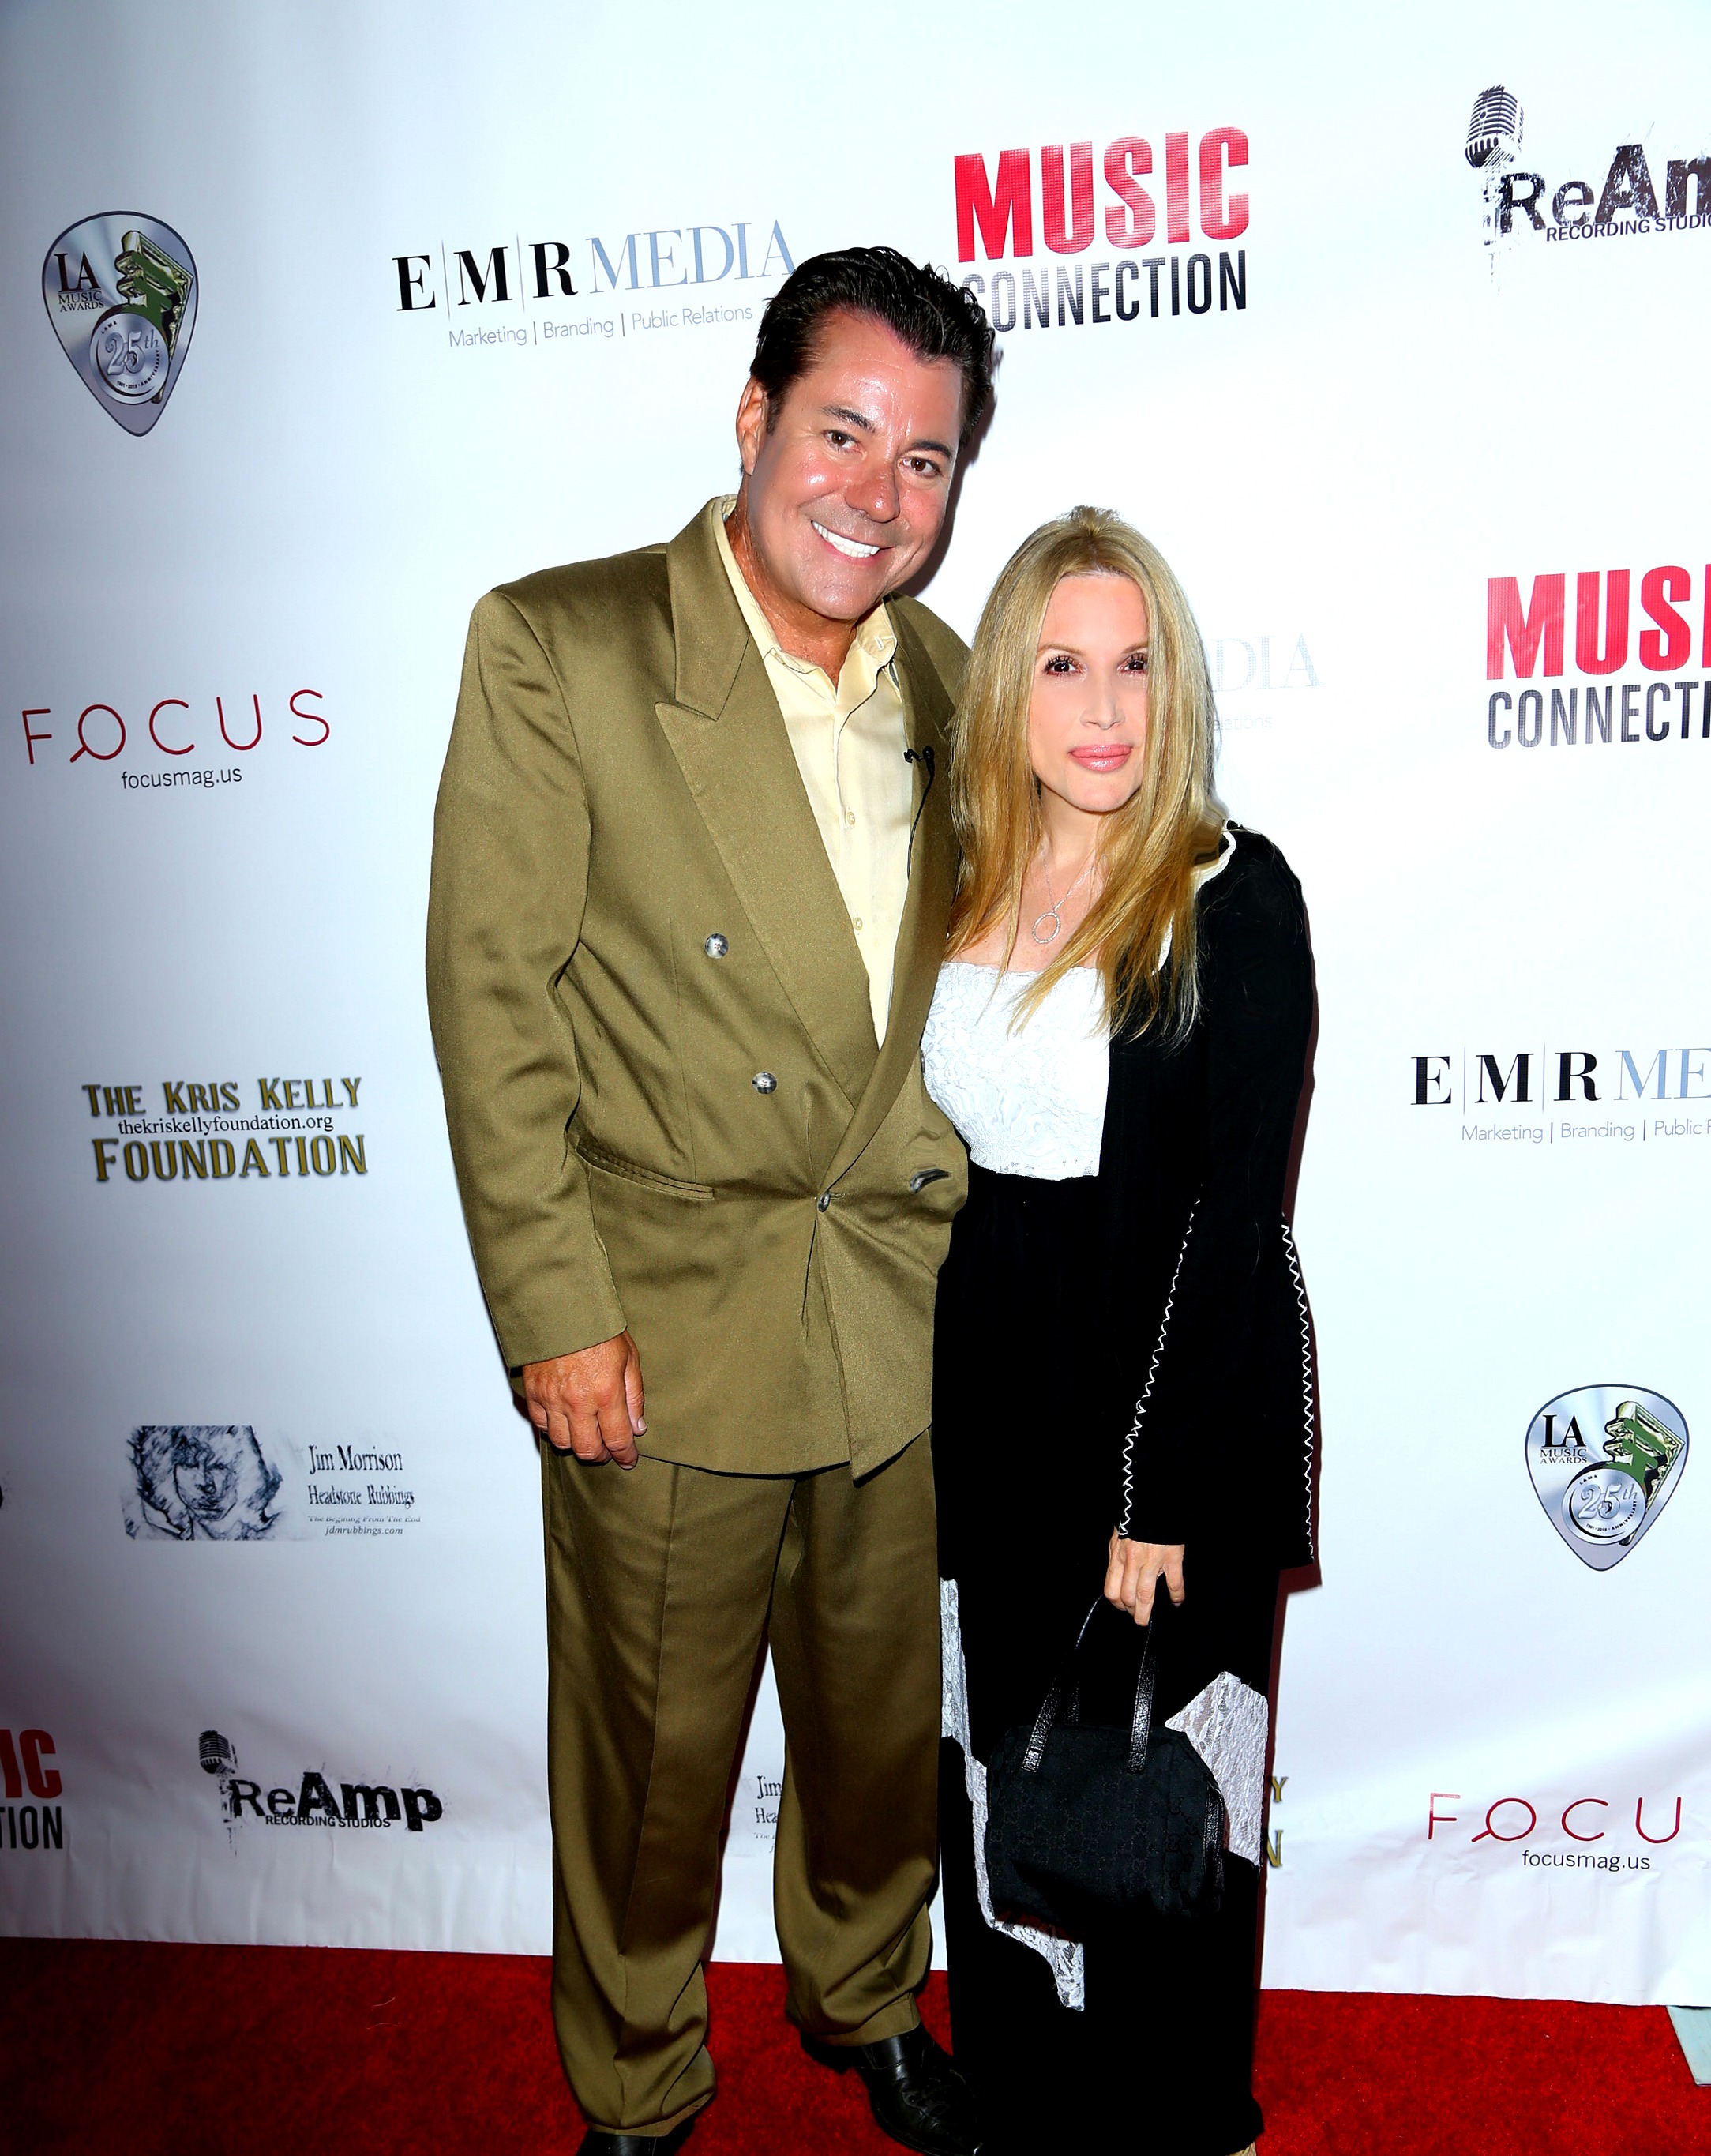 Kris Kelly and Al Bowman at the LA Music Awards